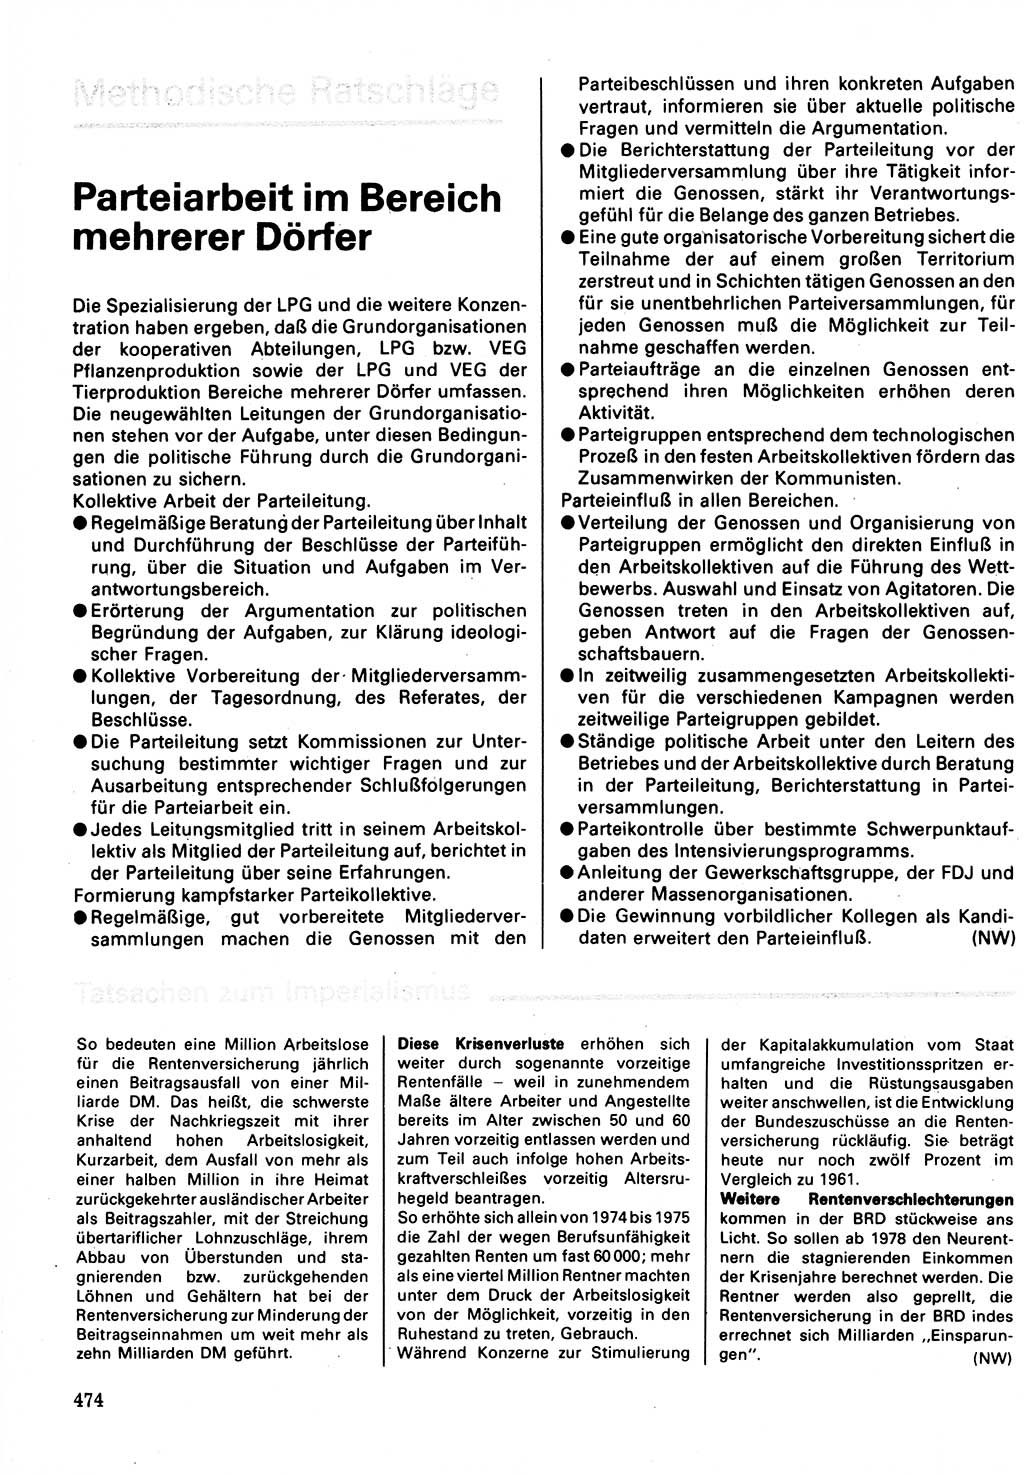 Neuer Weg (NW), Organ des Zentralkomitees (ZK) der SED (Sozialistische Einheitspartei Deutschlands) für Fragen des Parteilebens, 32. Jahrgang [Deutsche Demokratische Republik (DDR)] 1977, Seite 474 (NW ZK SED DDR 1977, S. 474)